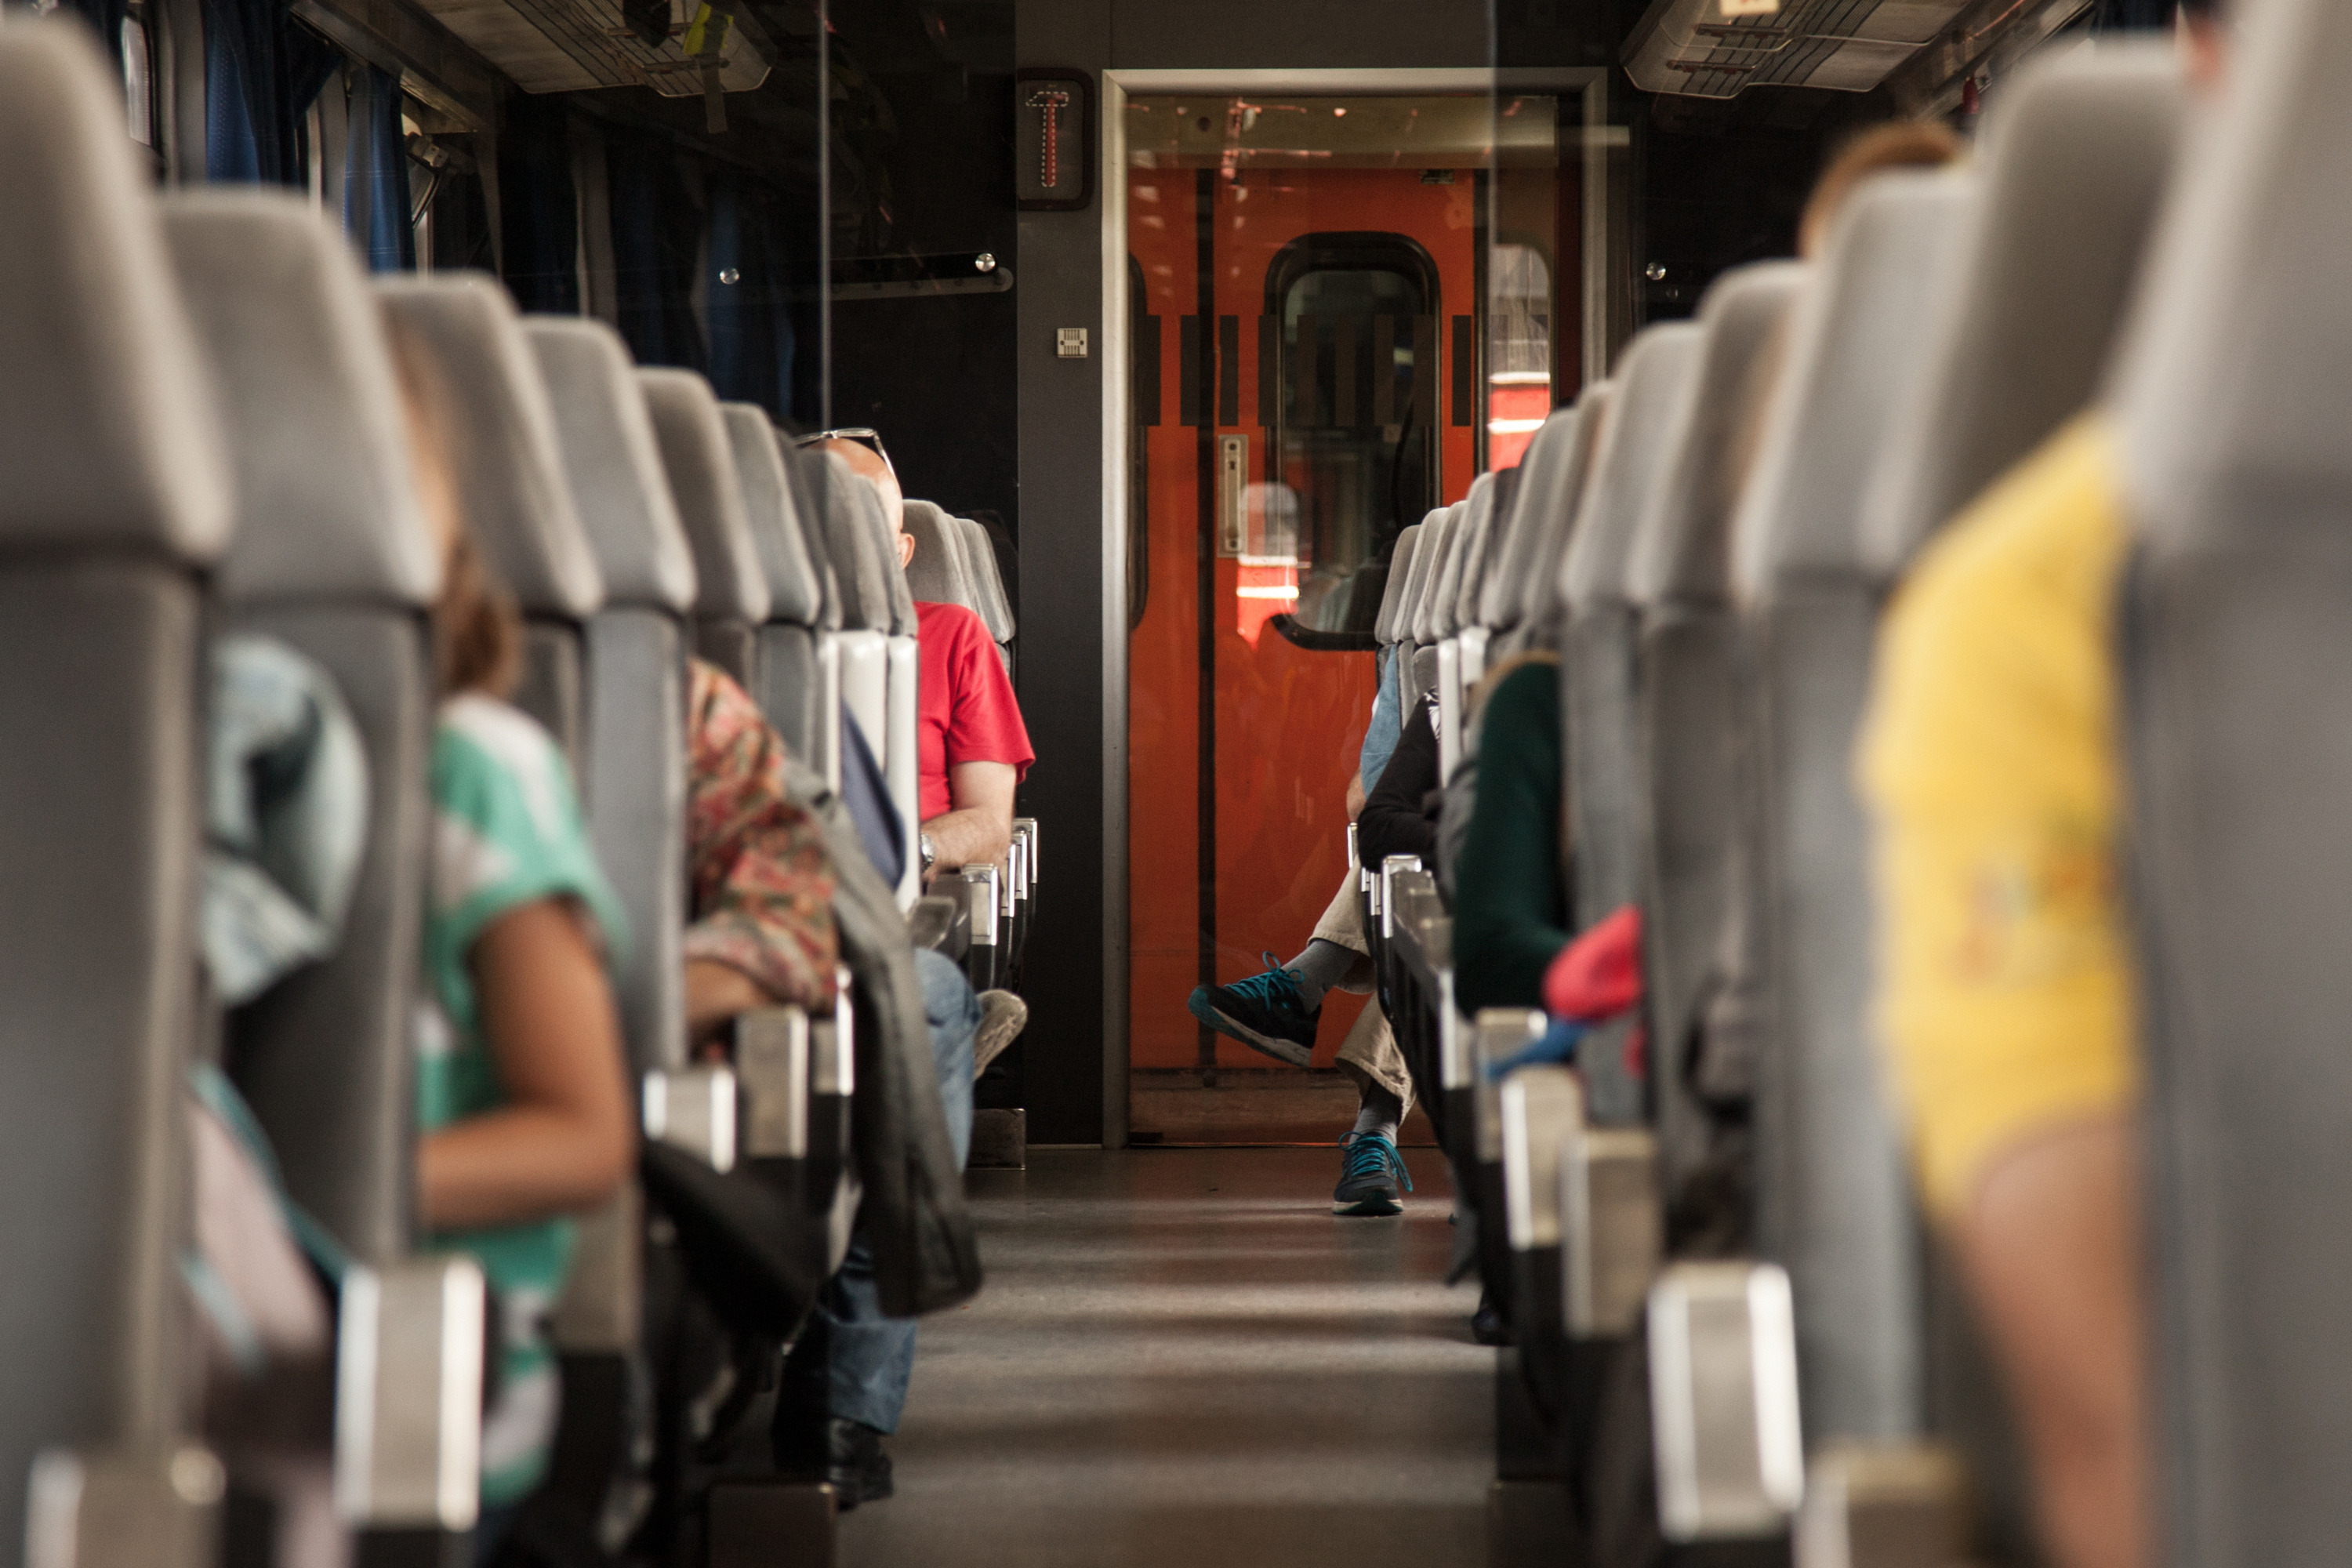 Innenaufnahme eines Zugwagons: Links und Rechts vom Gang graue Sitzplätze in zahlreichen Reihen hintereinander, Menschen im Ausschnitt darauf sitzend erkennbar, im Hintergrund rote Wagontüre